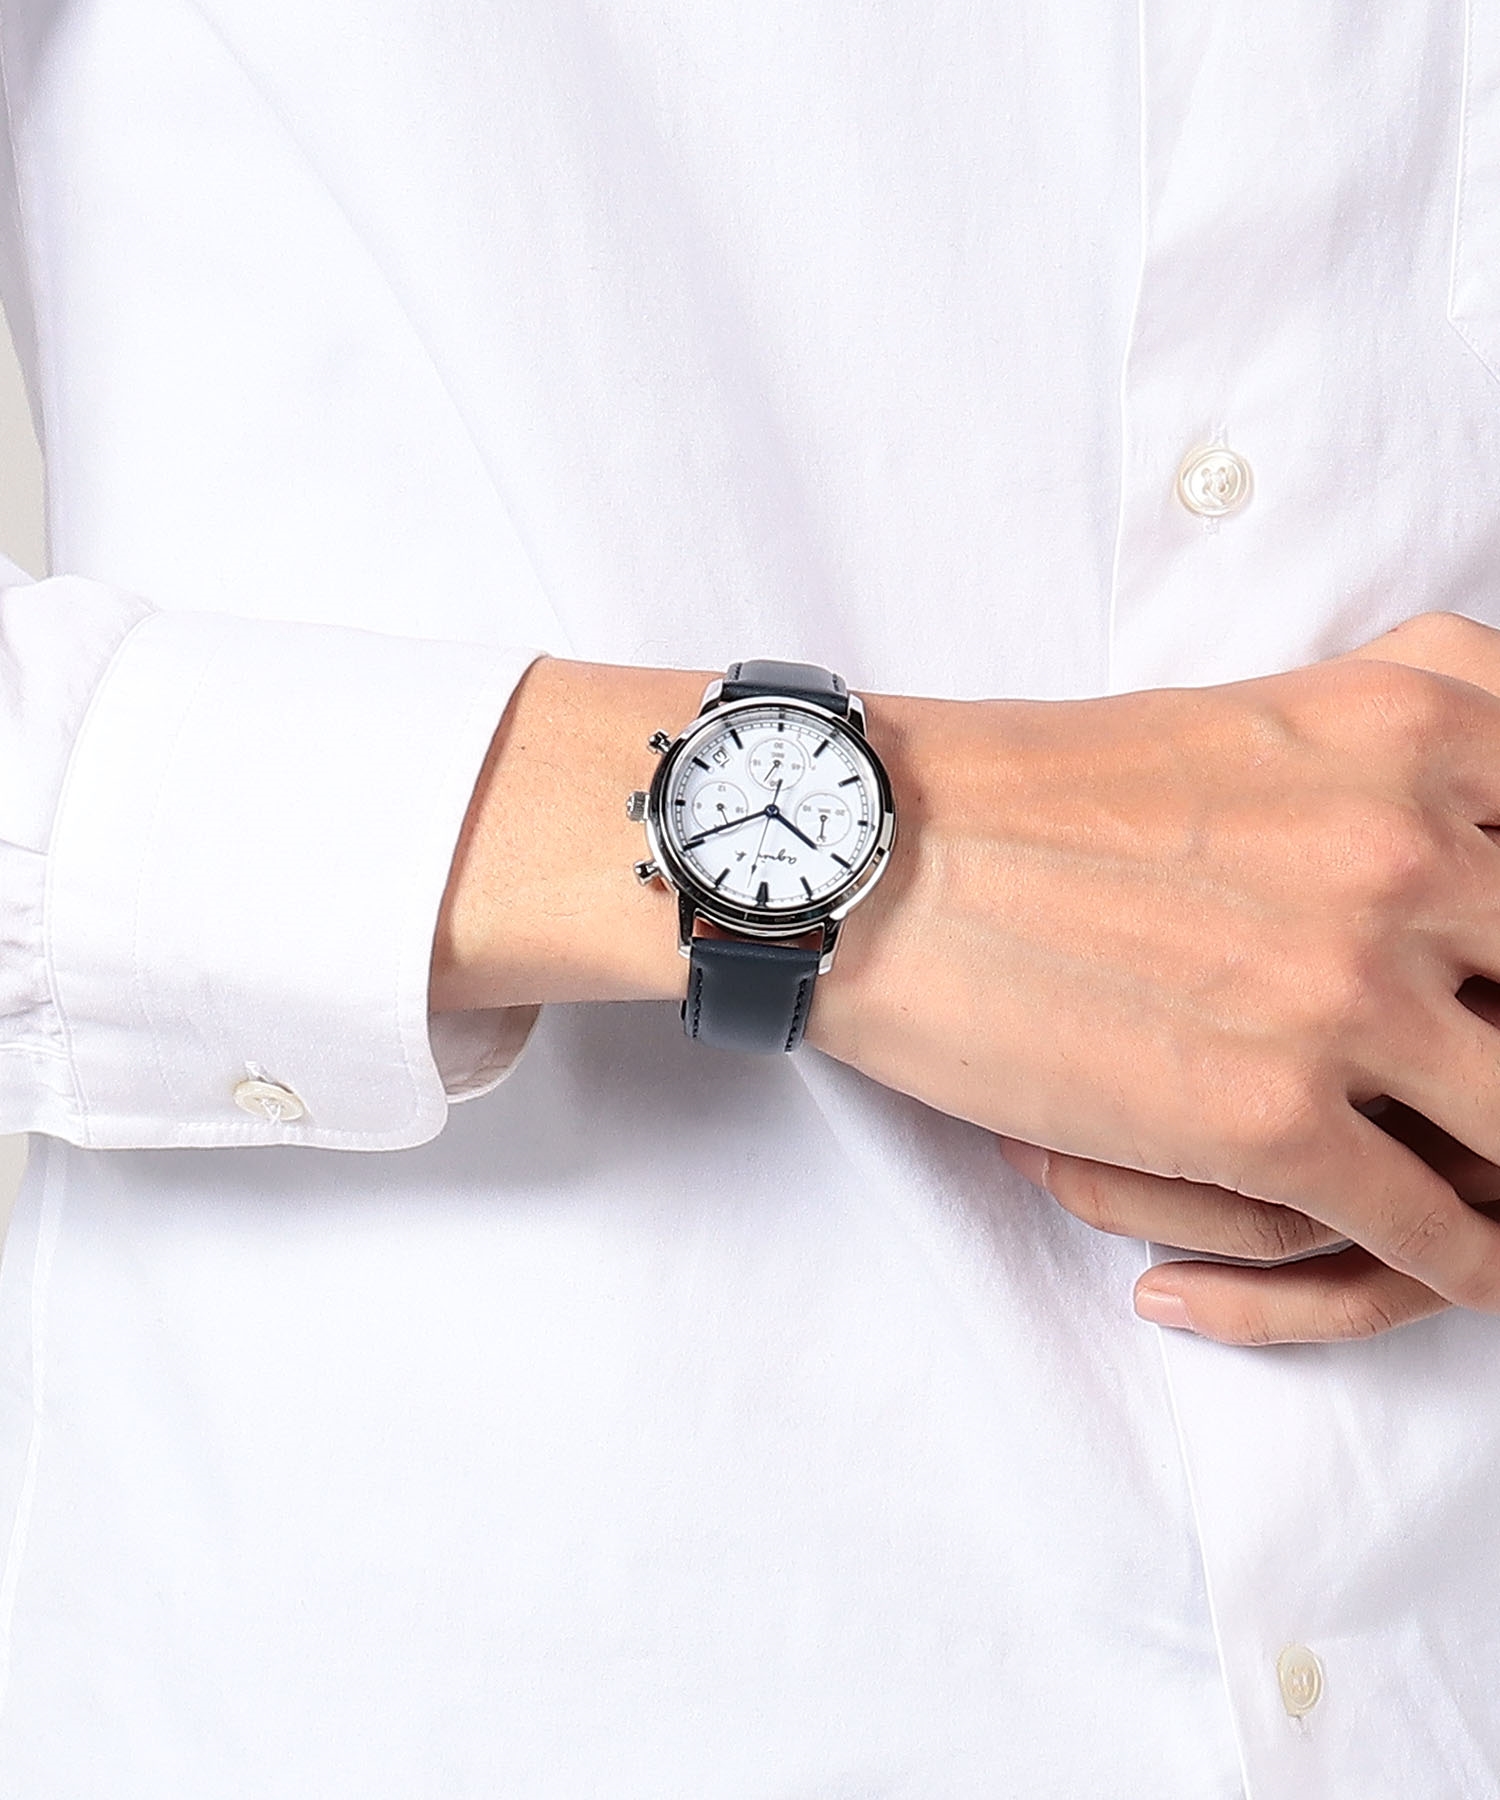 【超美品】アニエスベー agnes b ソーラー型腕時計 クロノグラフ 白